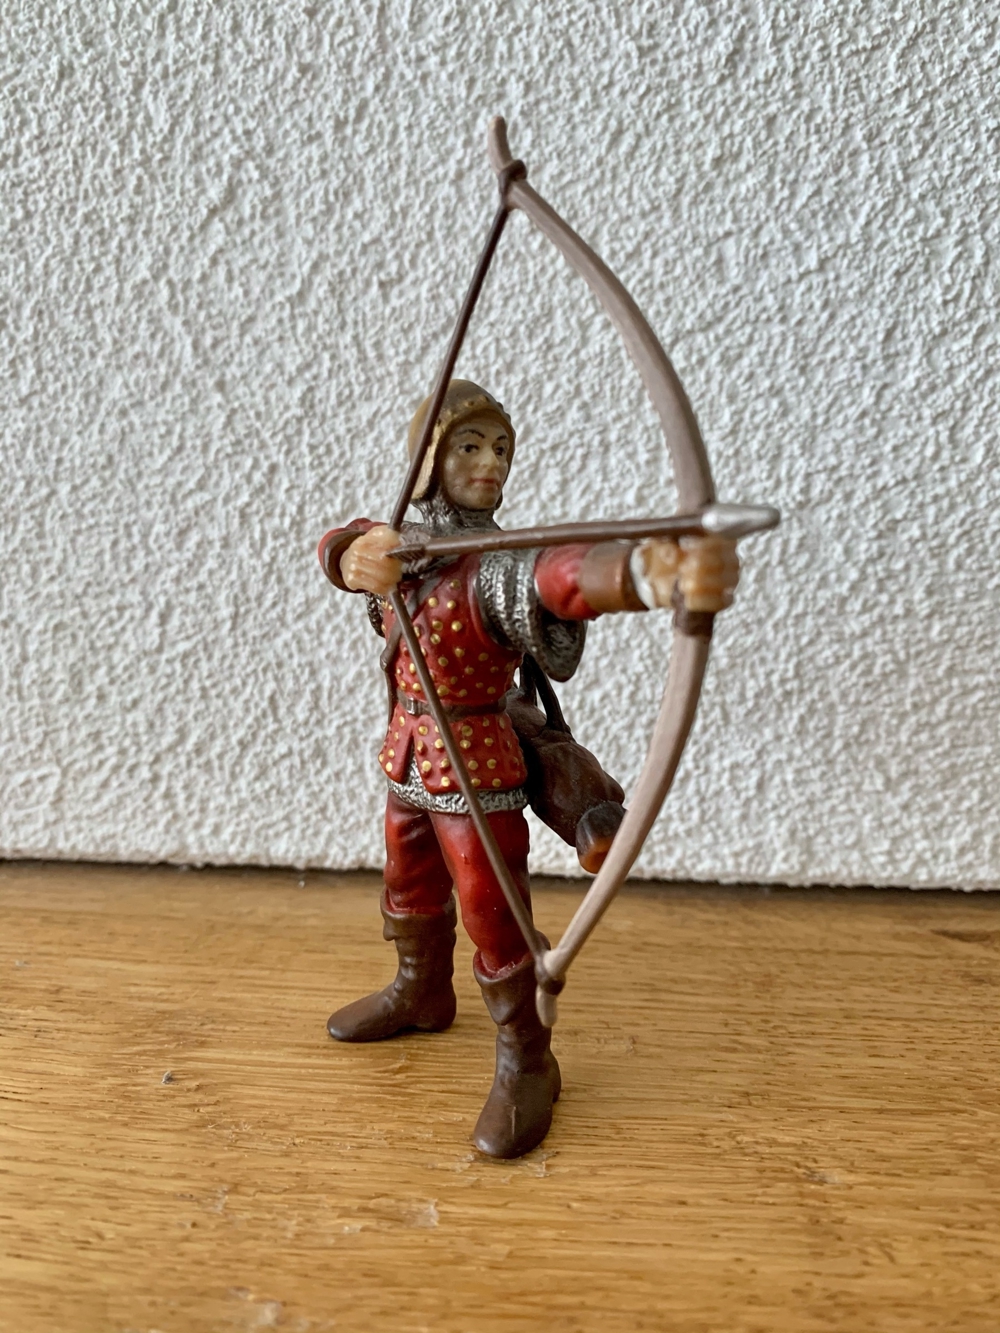 Spielfigur "Ritter" mit Pfeil & Bogen